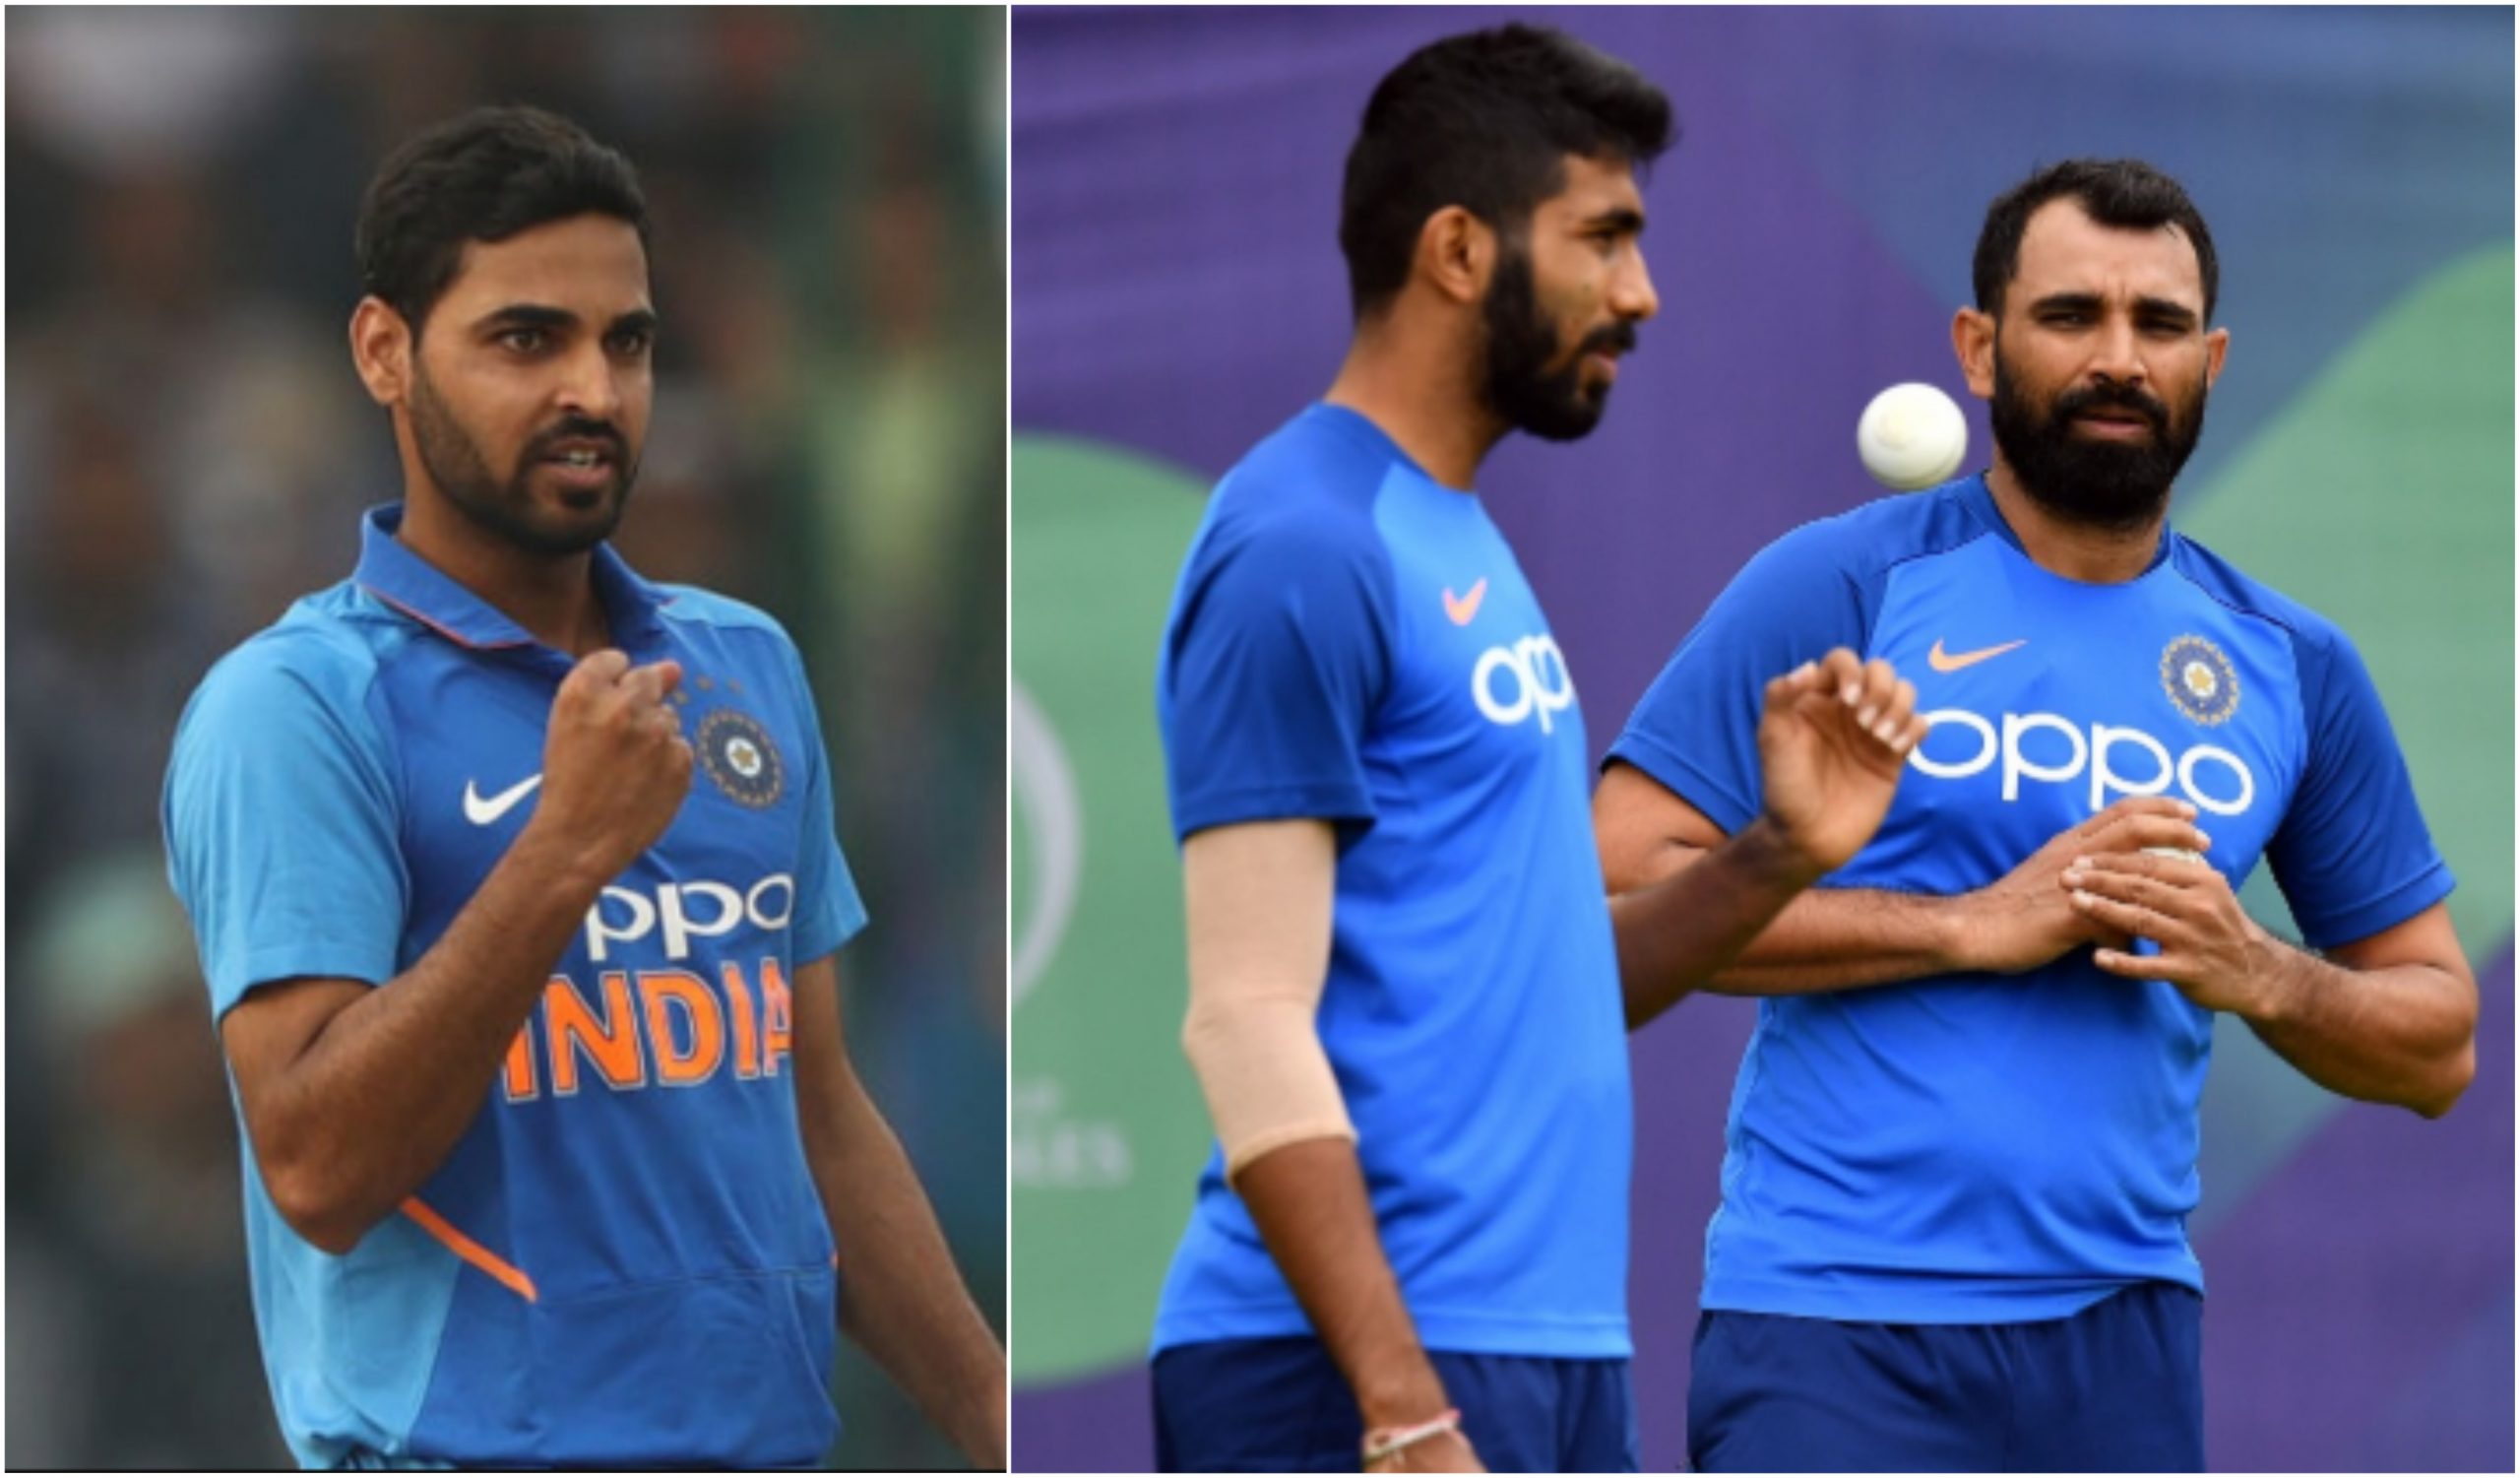 New Team India: शमी-भुवनेश्वर हो सकते है टीम इंडिया से बाहर, ये दो धाकड़ खिलाड़ी जगह लेने के लिए तैयार